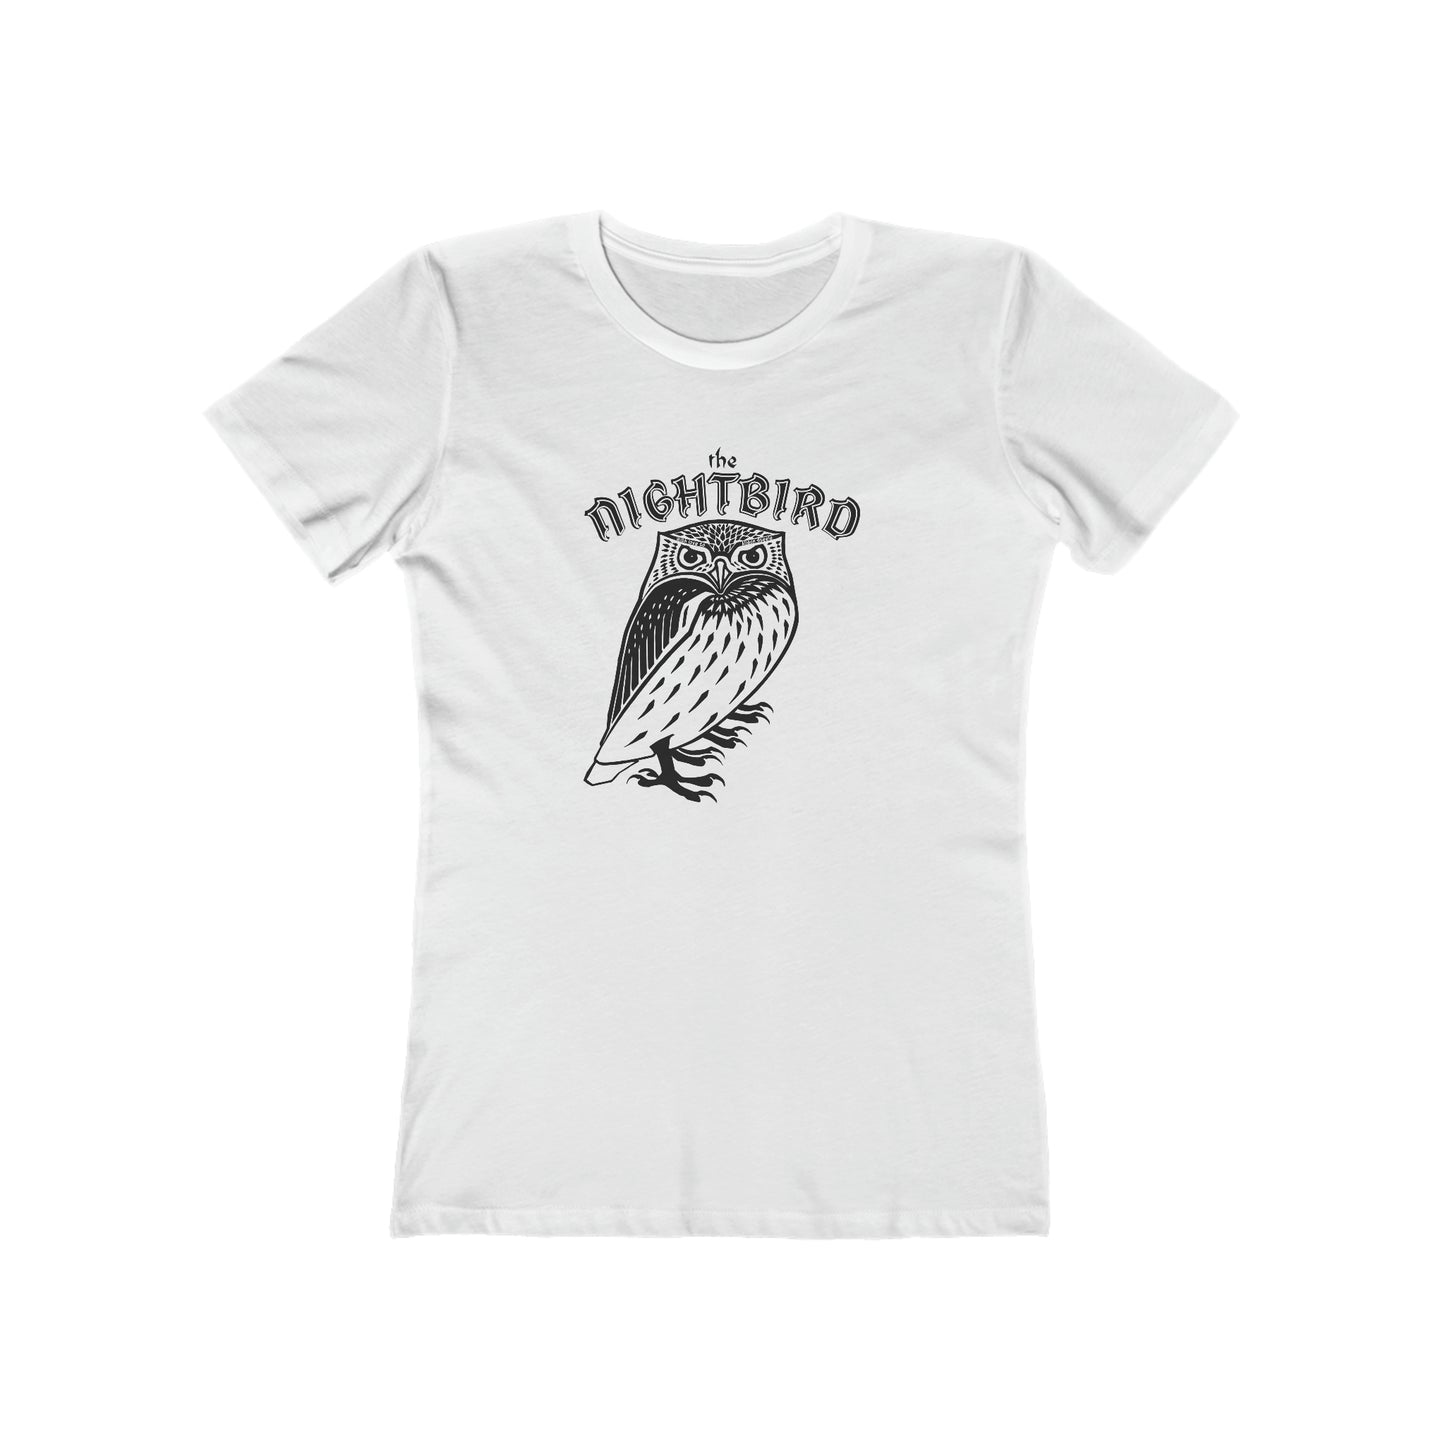 The Nightbird - Women's T-Shirt